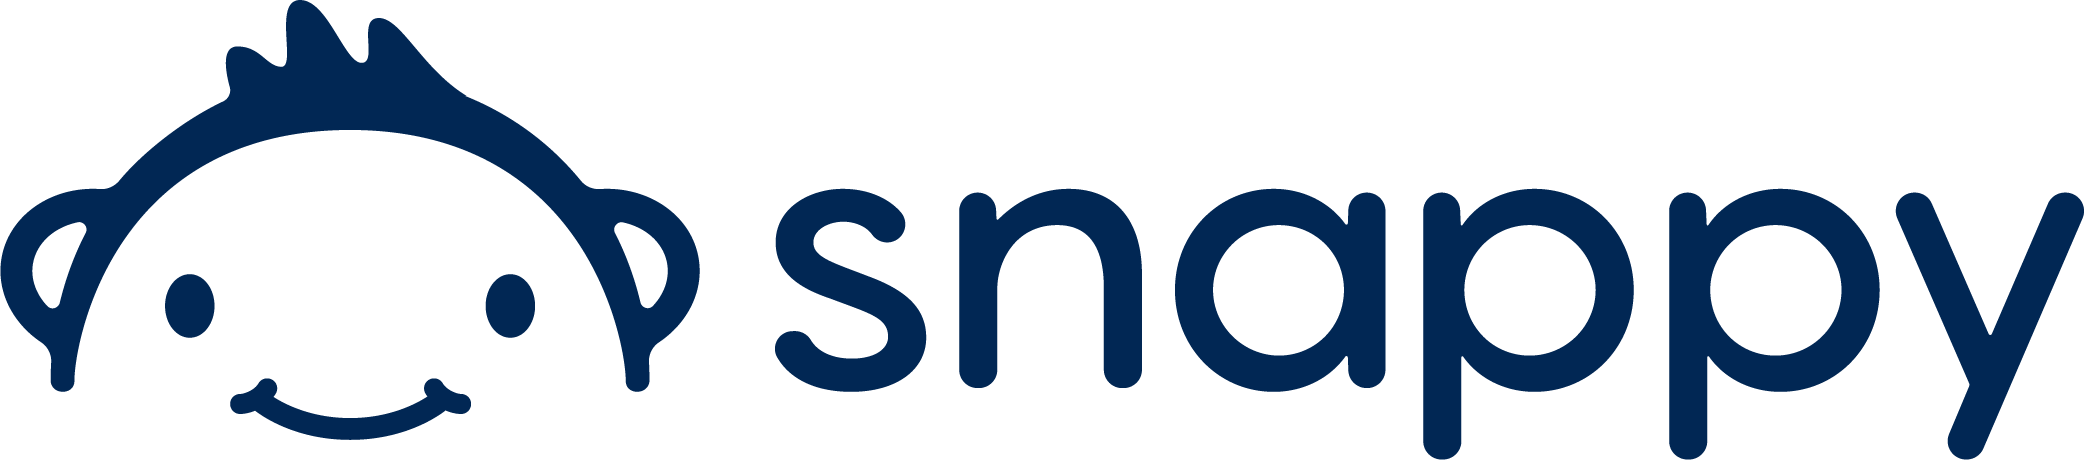 Snappy - logo